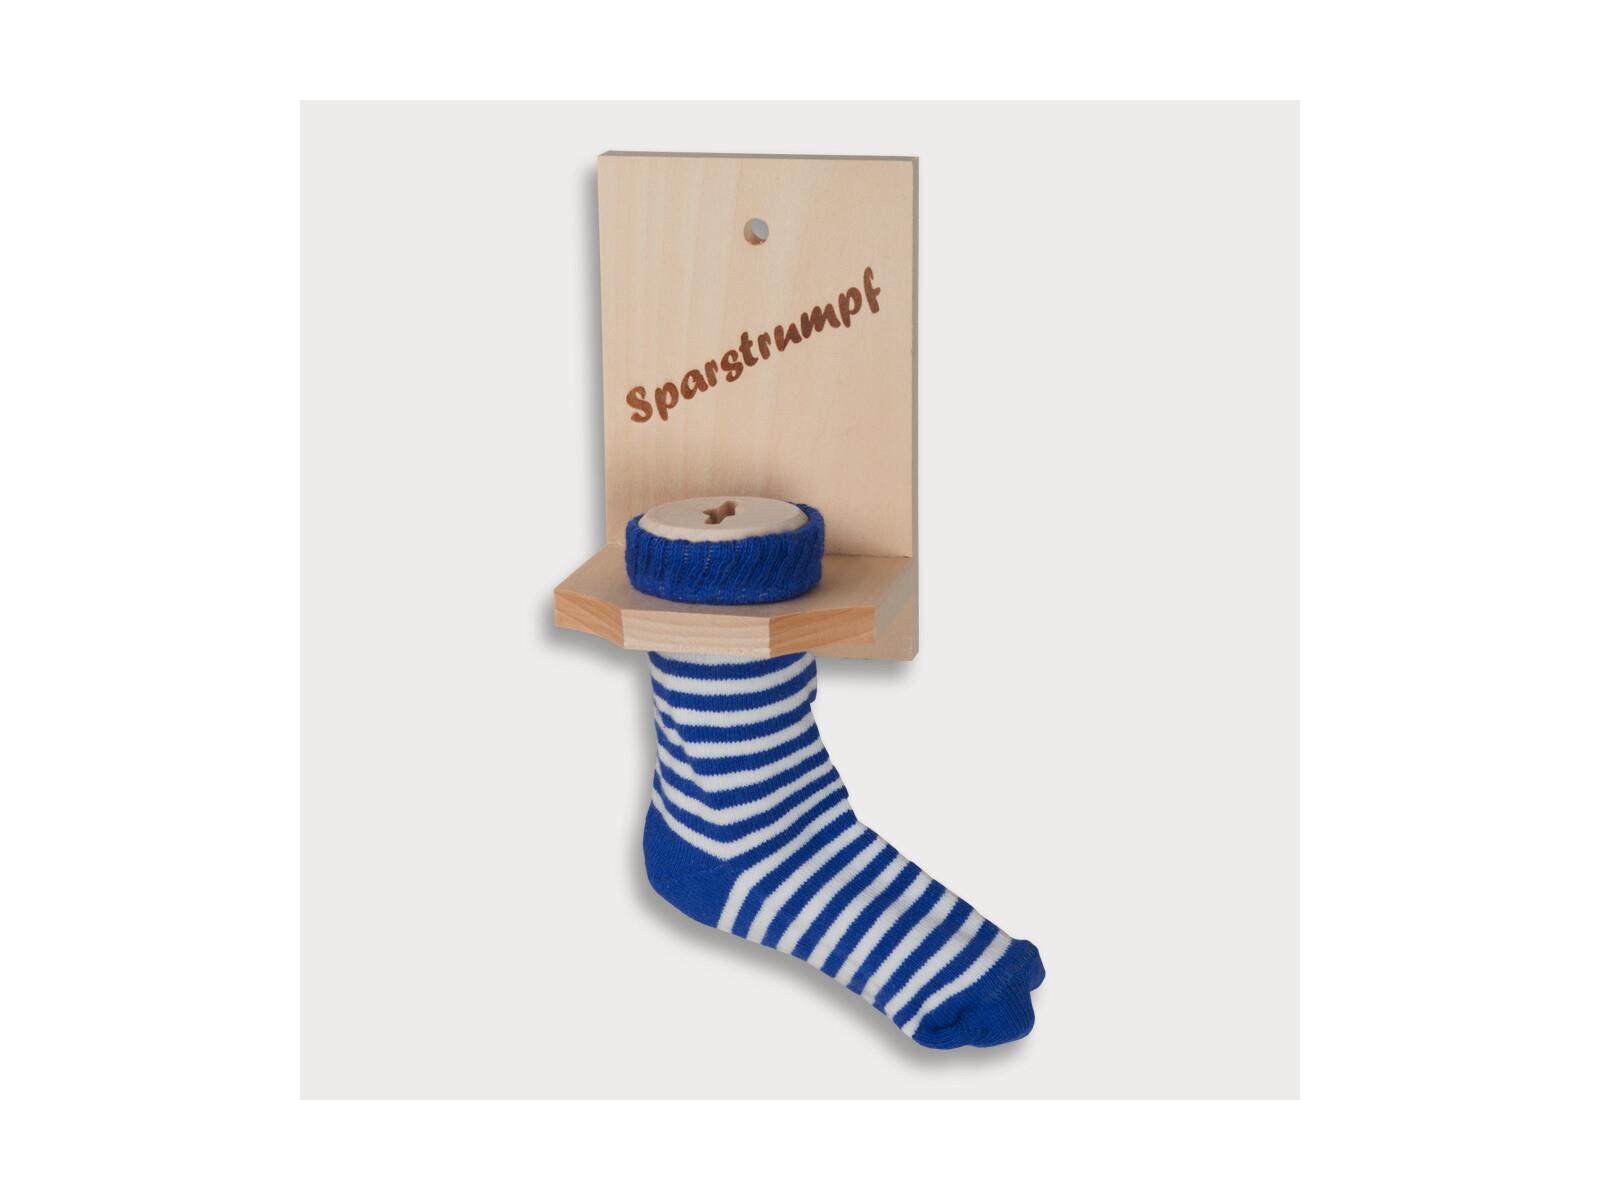 Sparstrumpf, blaue Socke, mit Einbrand Sparstrumpf aus Holz 12 cm